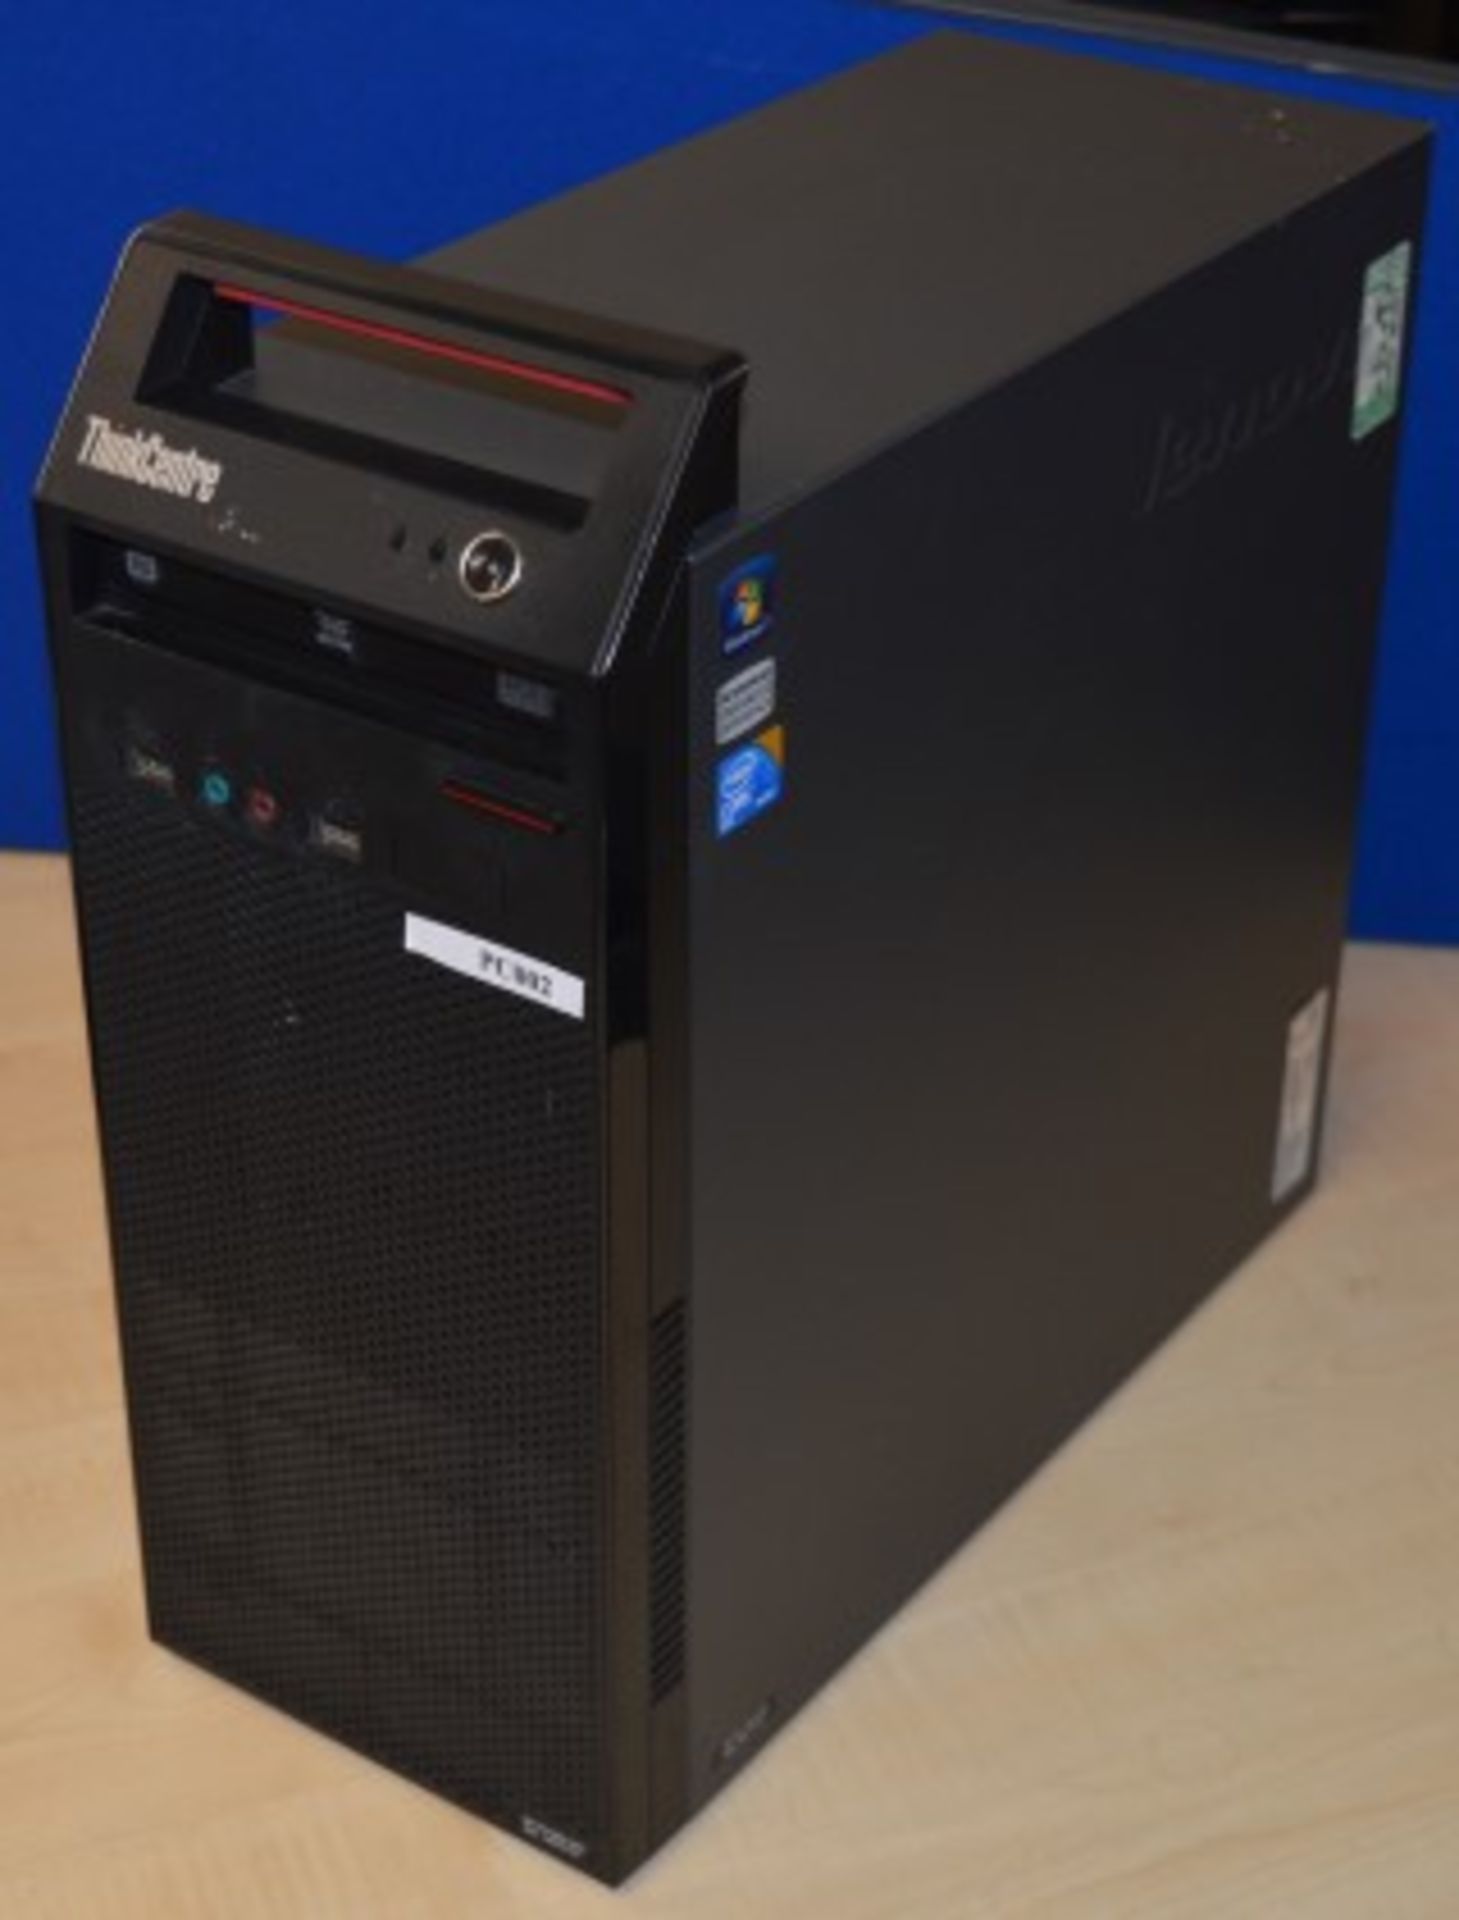 1 x Lenovo Thinkcentre A70 Desktop Computer - Intel Core 2 Duo E7500 2.93ghz Processor - 2gb DDR3